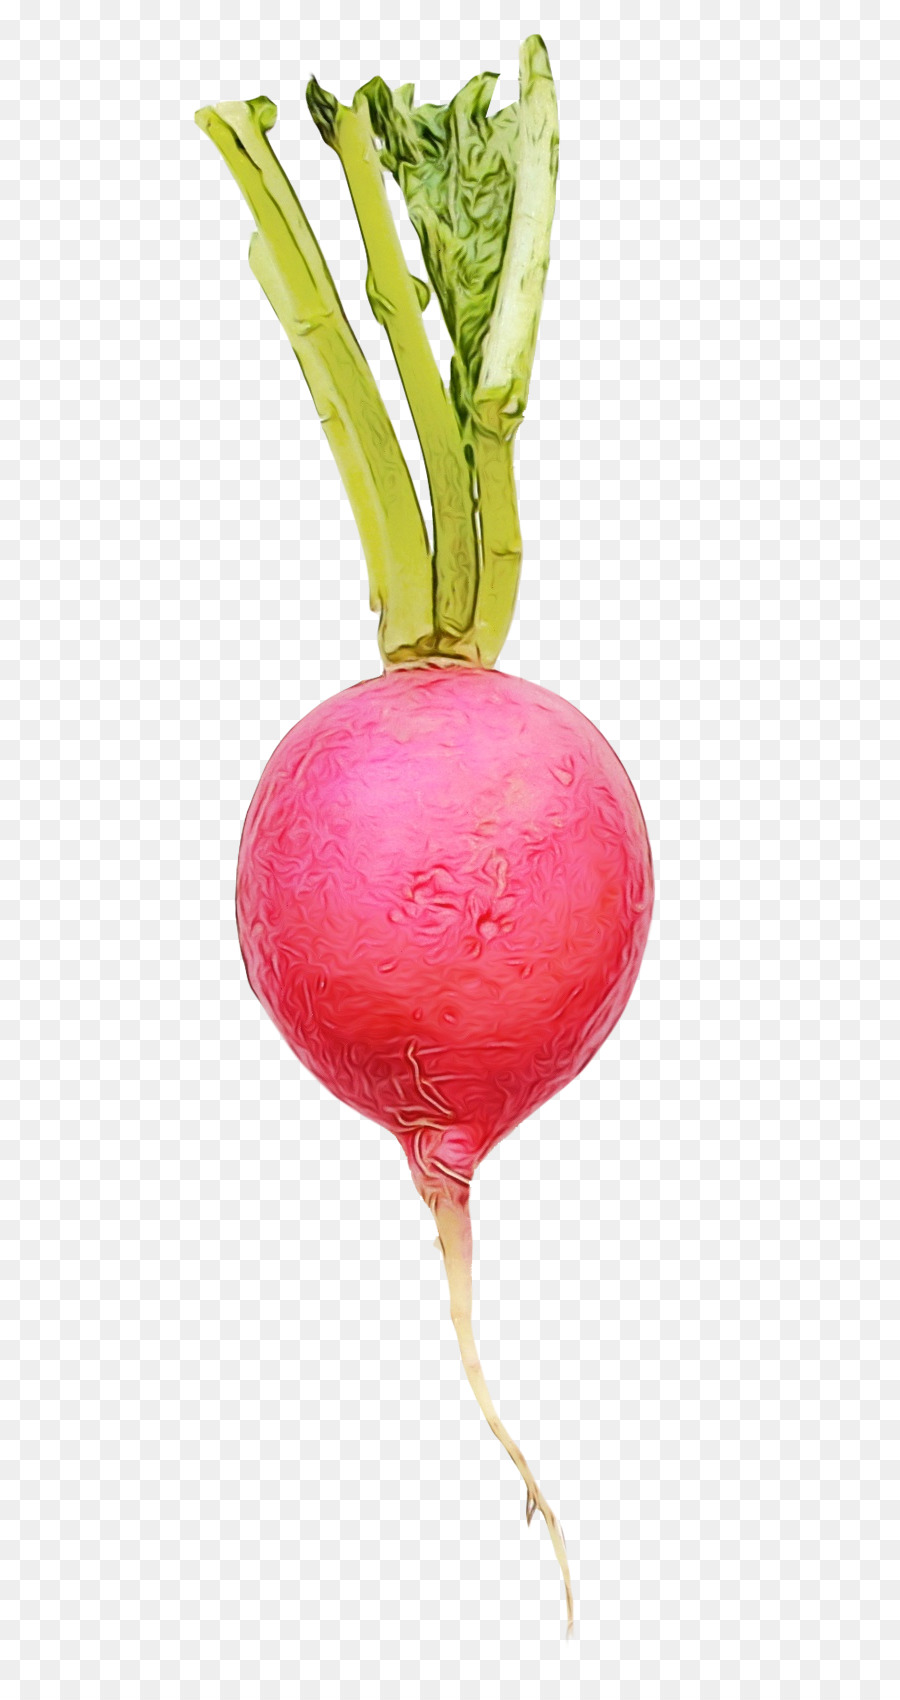 radish beetroot beet turnip vegetable